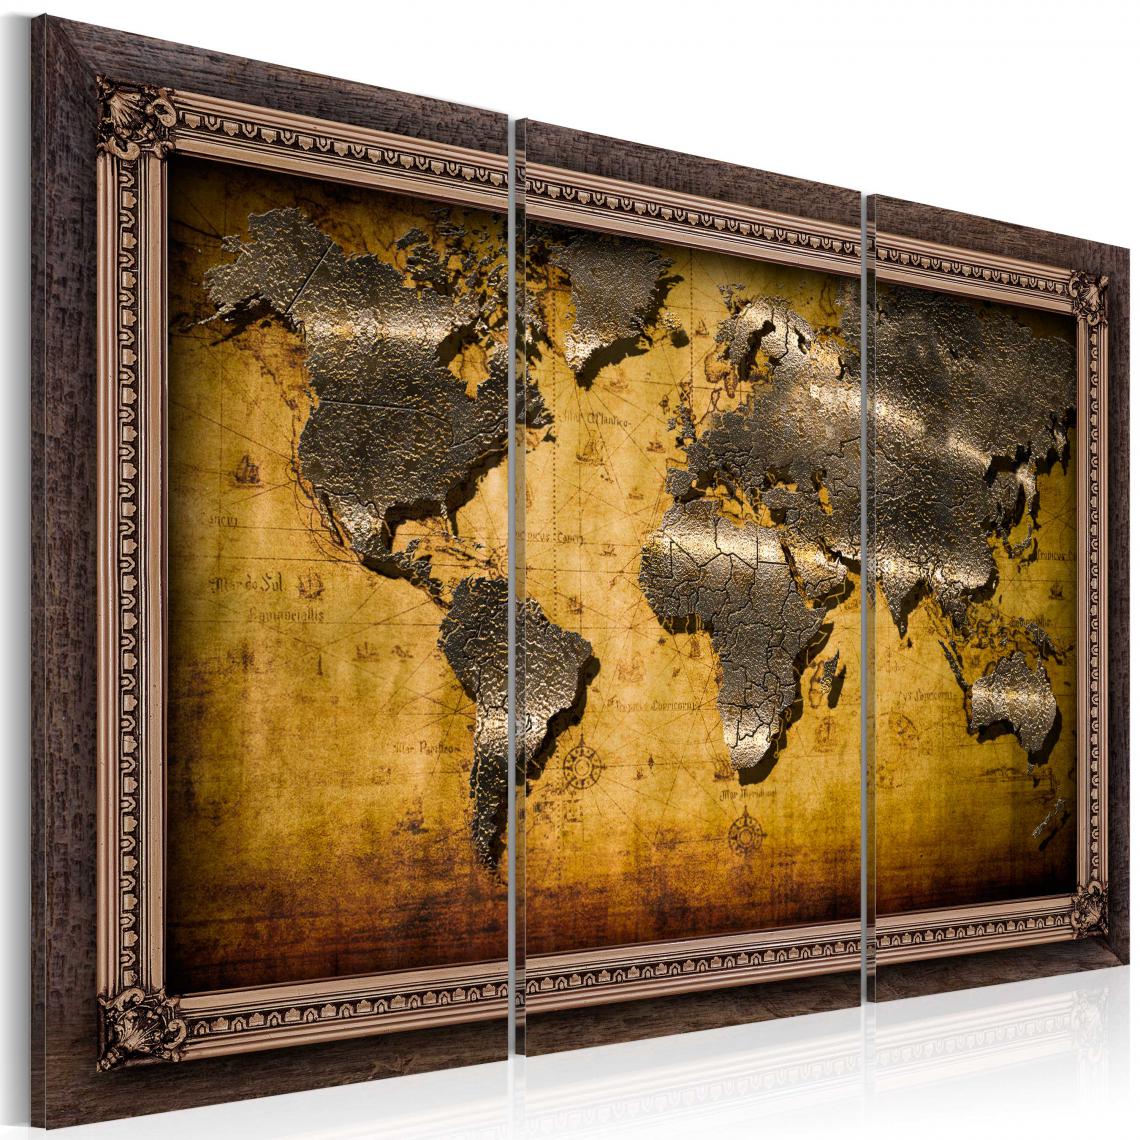 Decoshop26 - Tableau sur toile en 3 panneaux décoration murale image imprimée cadre en bois à suspendre Le monde dans un cadre 60x40 cm 11_0004173 - Tableaux, peintures